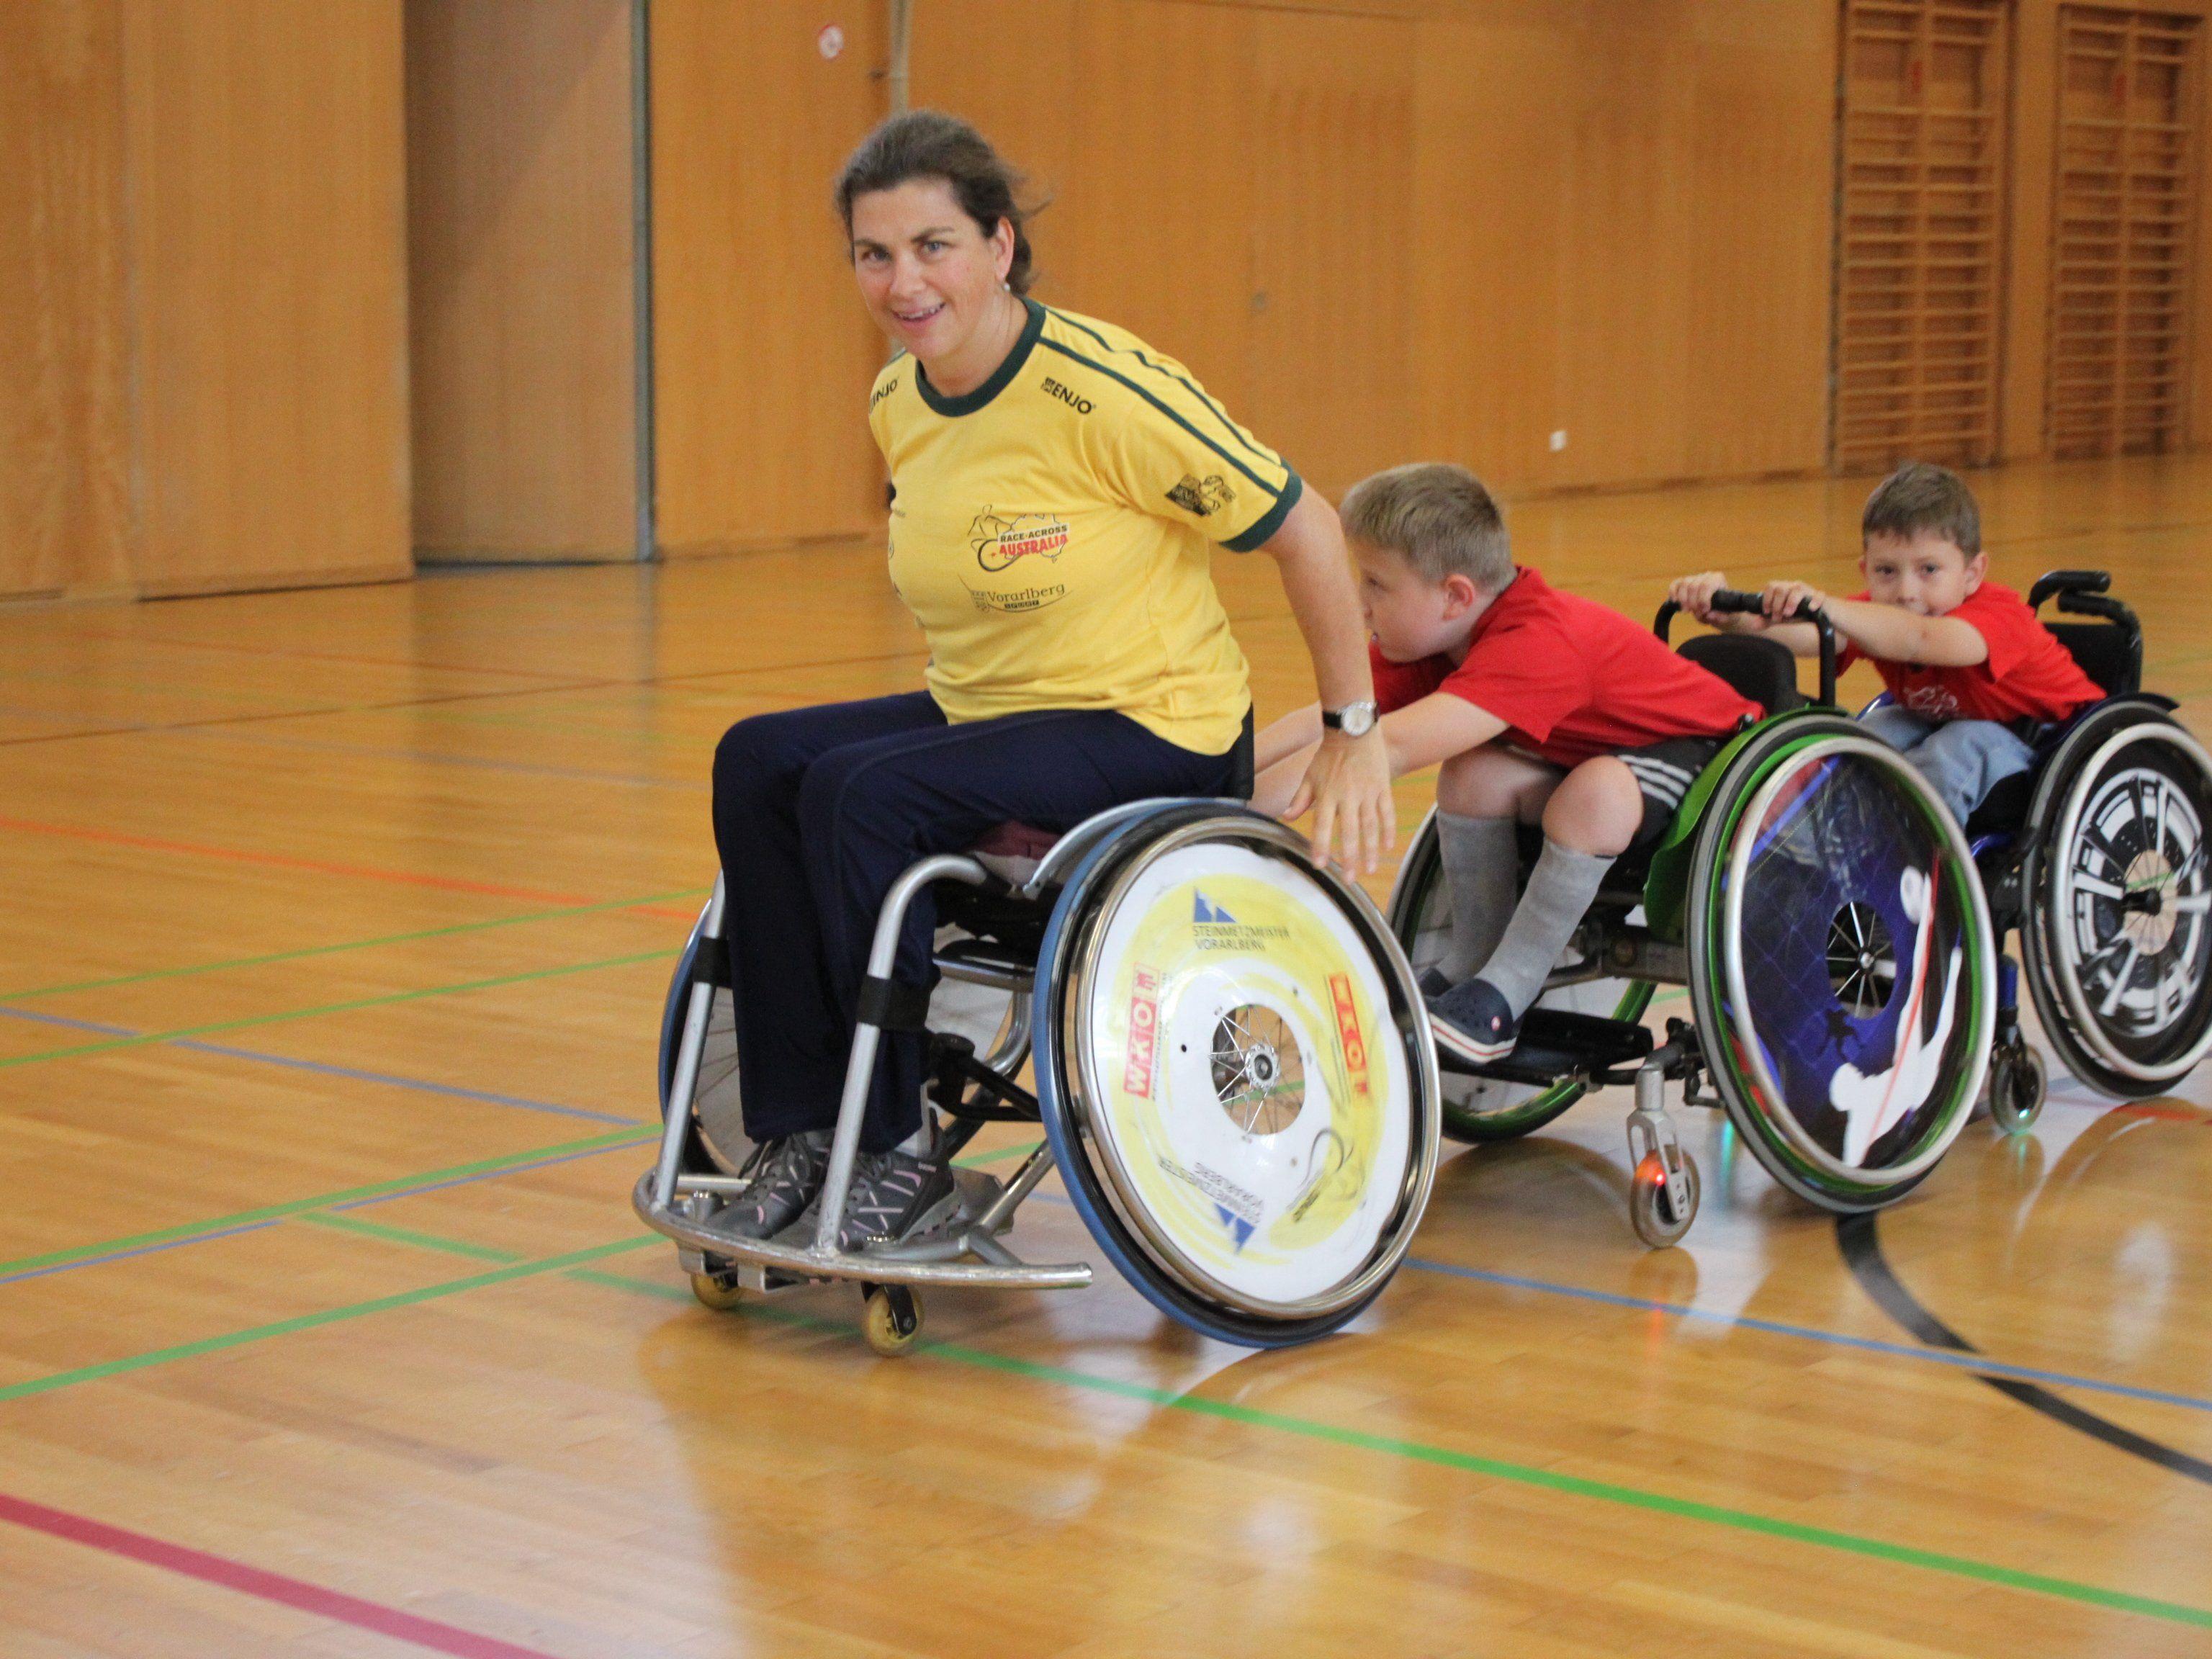 Spielerisch wird bei den Rolli-Kids der Umgang mit dem Rollstuhl trainiert